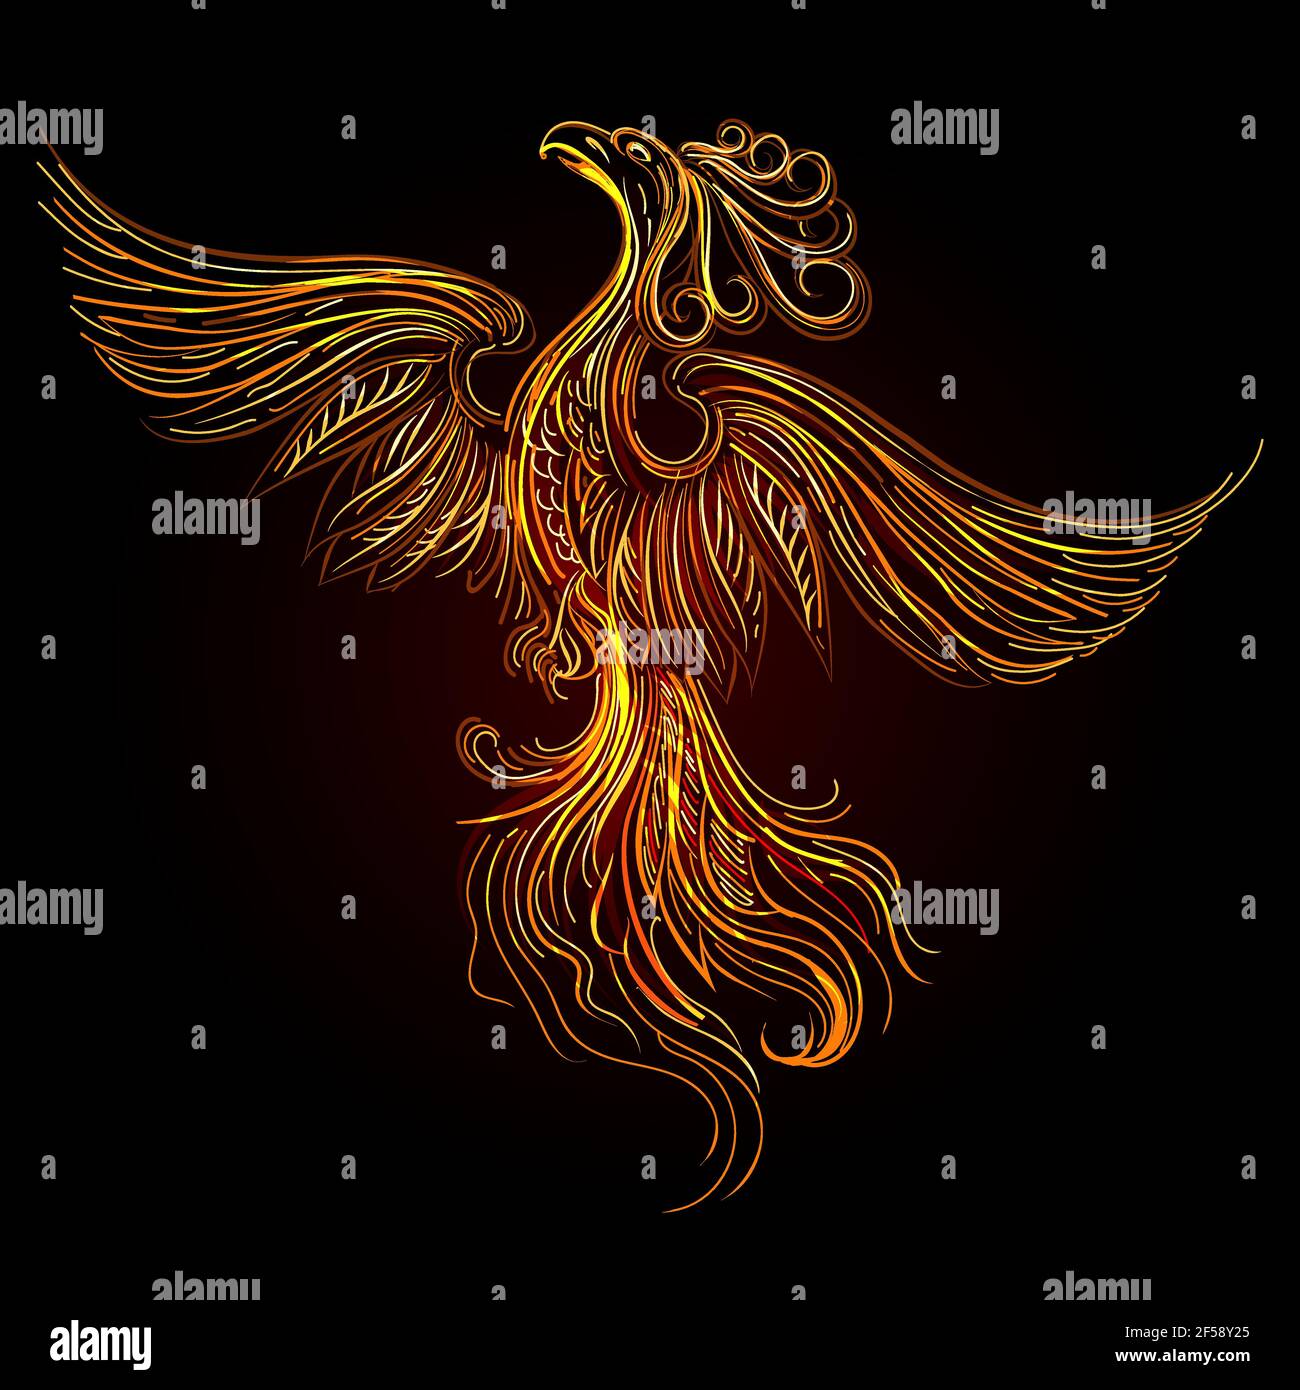 Phoenix Bird: Hình ảnh chim Phượng Hoàng như một biểu tượng cho sự phục sinh và hy vọng. Với những màu sắc tươi sáng và độc đáo, bức tranh với hình ảnh con chim Phượng Hoàng sẽ là món quà tuyệt vời dành cho bạn và người thân. Nó còn mang lại cho bạn sự độc đáo, sáng tạo và nhờ đó tăng cường cảm giác yêu đời và nhiệt huyết.